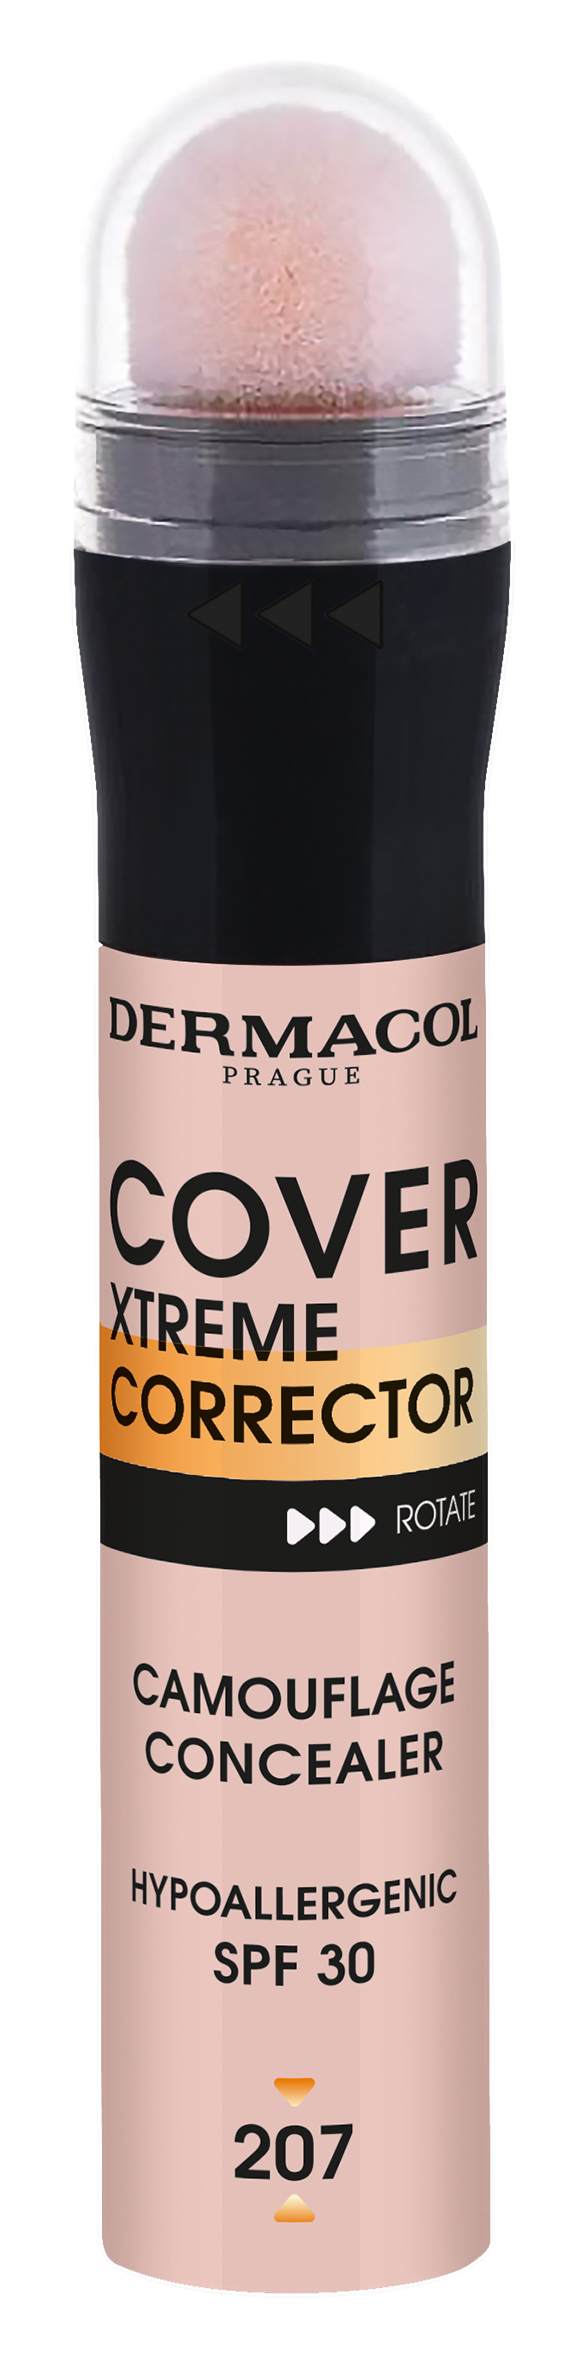 Dermacol Vysoce krycí korektor Cover Xtreme SPF 30 (Camouflage Concealer) 8 g 1